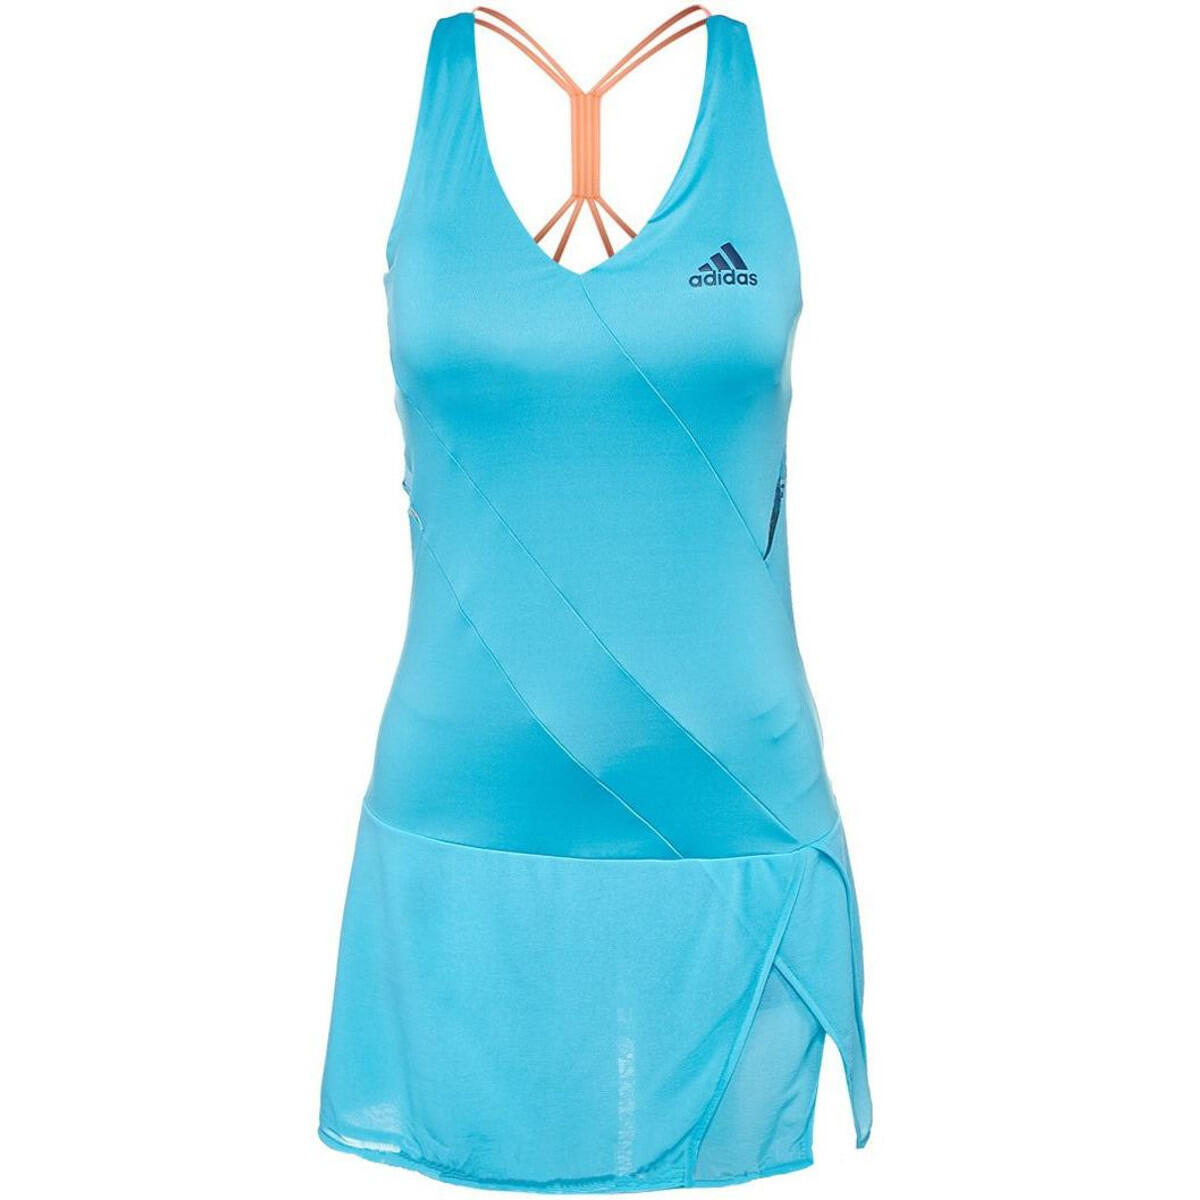 Adidas Melbourne Women's Tennis Dress